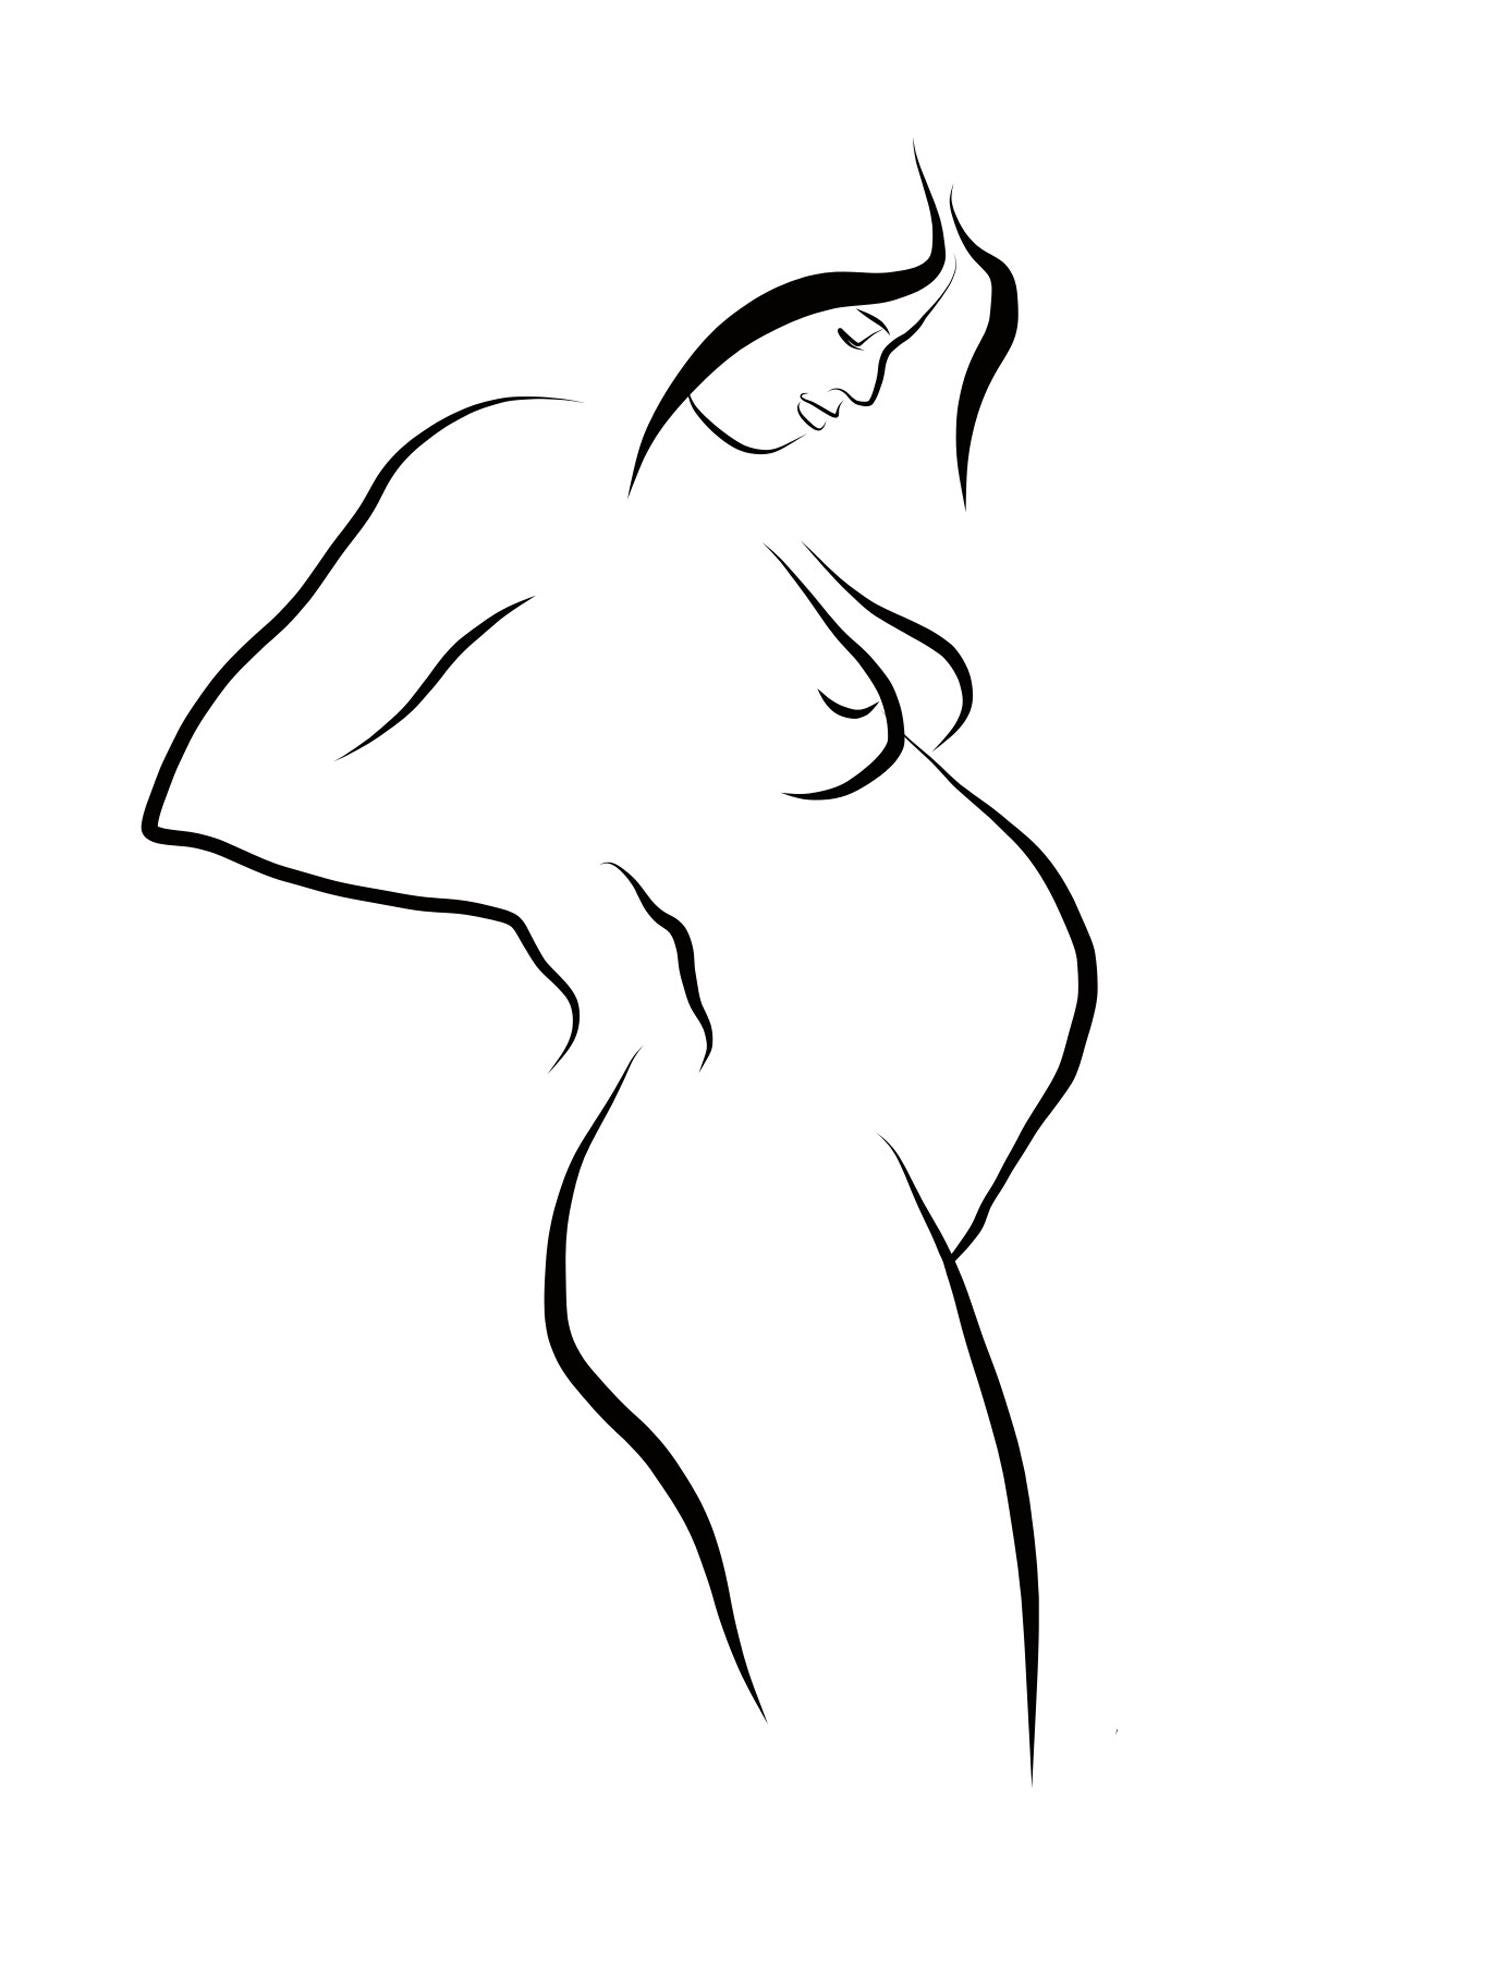 Michael Binkley Nude Print – Haiku #3, 1/50 - Digital Vector B&W Zeichnung prägende weiblicher Aktfrauenfigur, Akt, weiblicher Akt, Figur